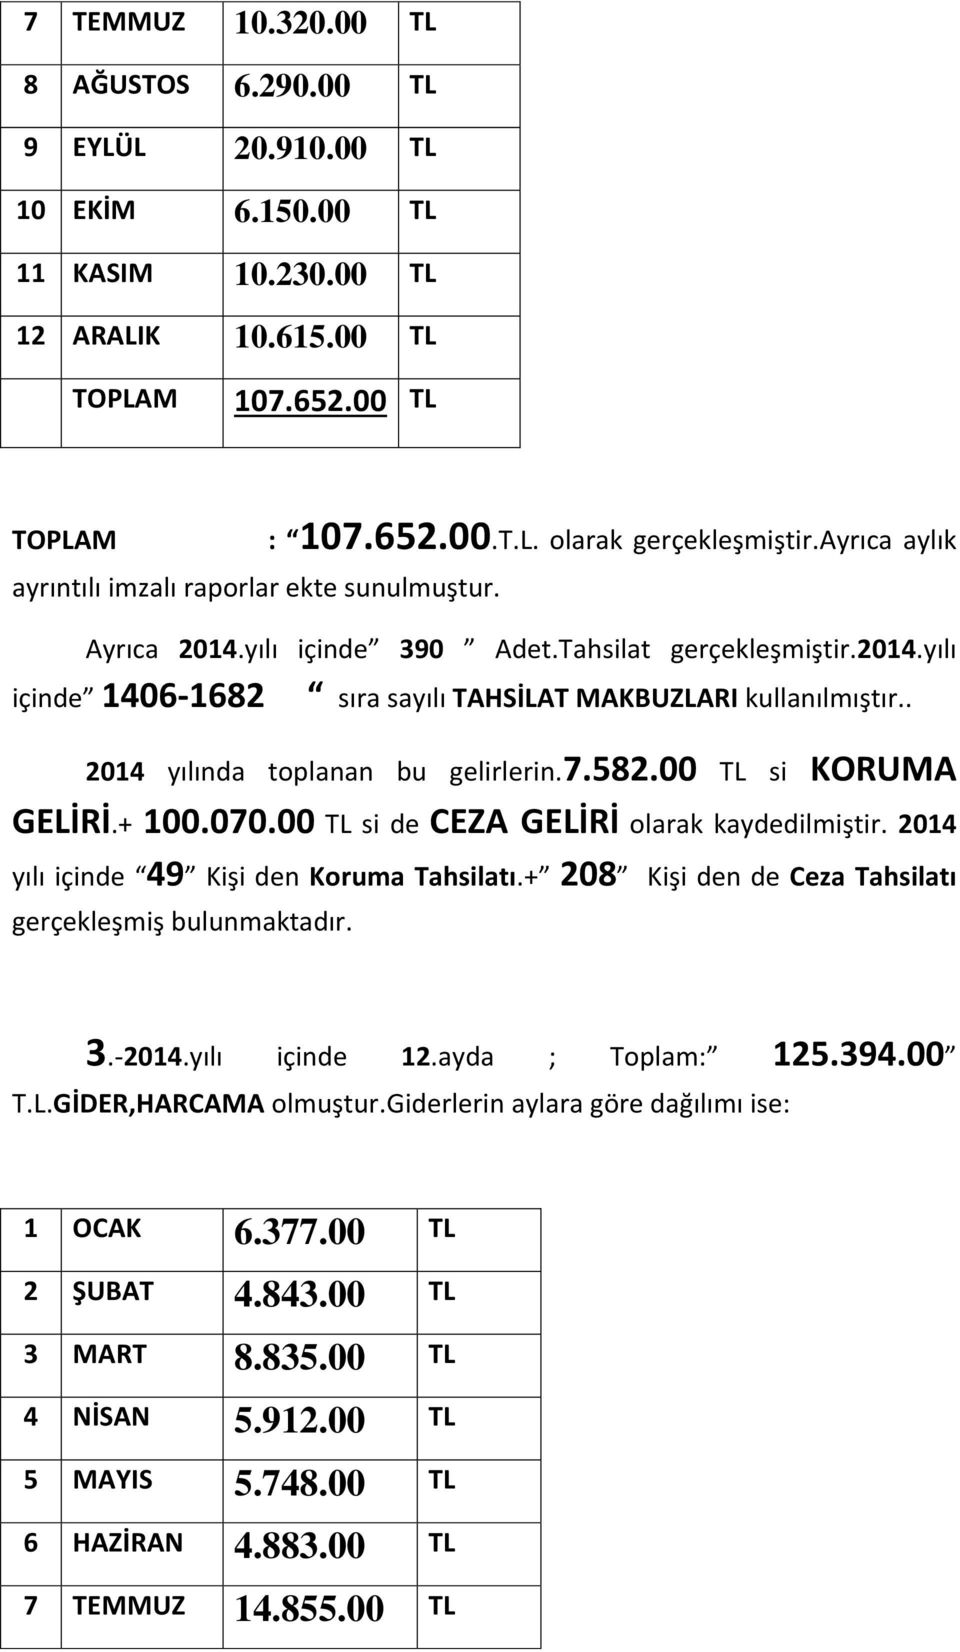 . 2014 yılında toplanan bu gelirlerin.7.582.00 TL si KORUMA GELİRİ.+ 100.070.00 TL si de CEZA GELİRİ olarak kaydedilmiştir. 2014 yılı içinde 49 Kişi den Koruma Tahsilatı.